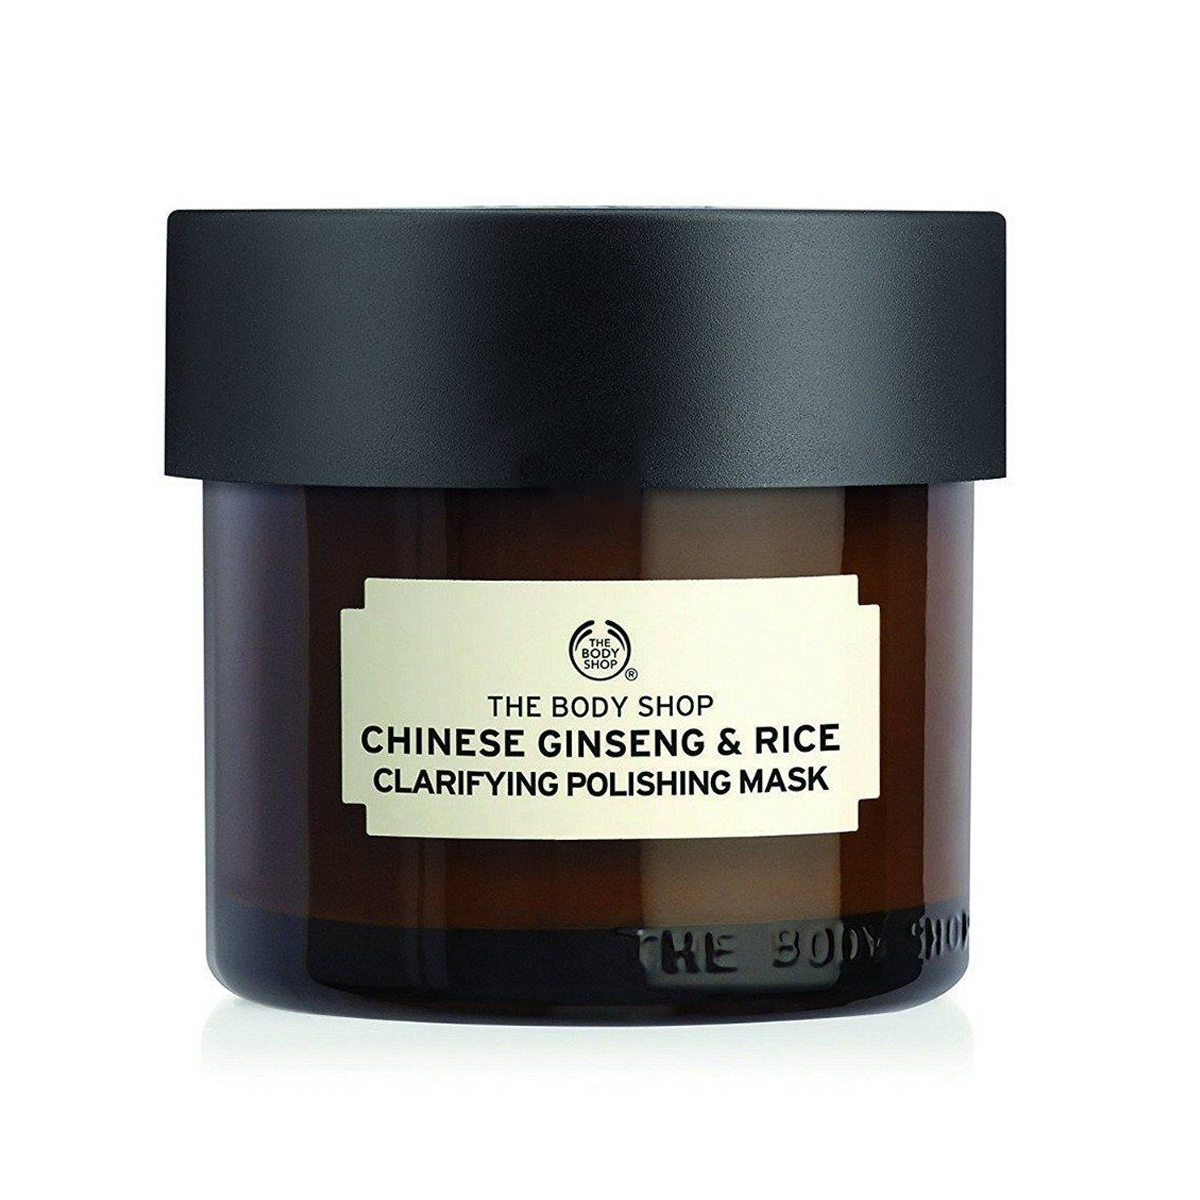 ماسک پاکسازی کننده عمقی و درخشان کننده برنج و جنسینگ چینی~Chinese Ginseng & Rice Clarifying Polishing Mask~THE BODY SHOP